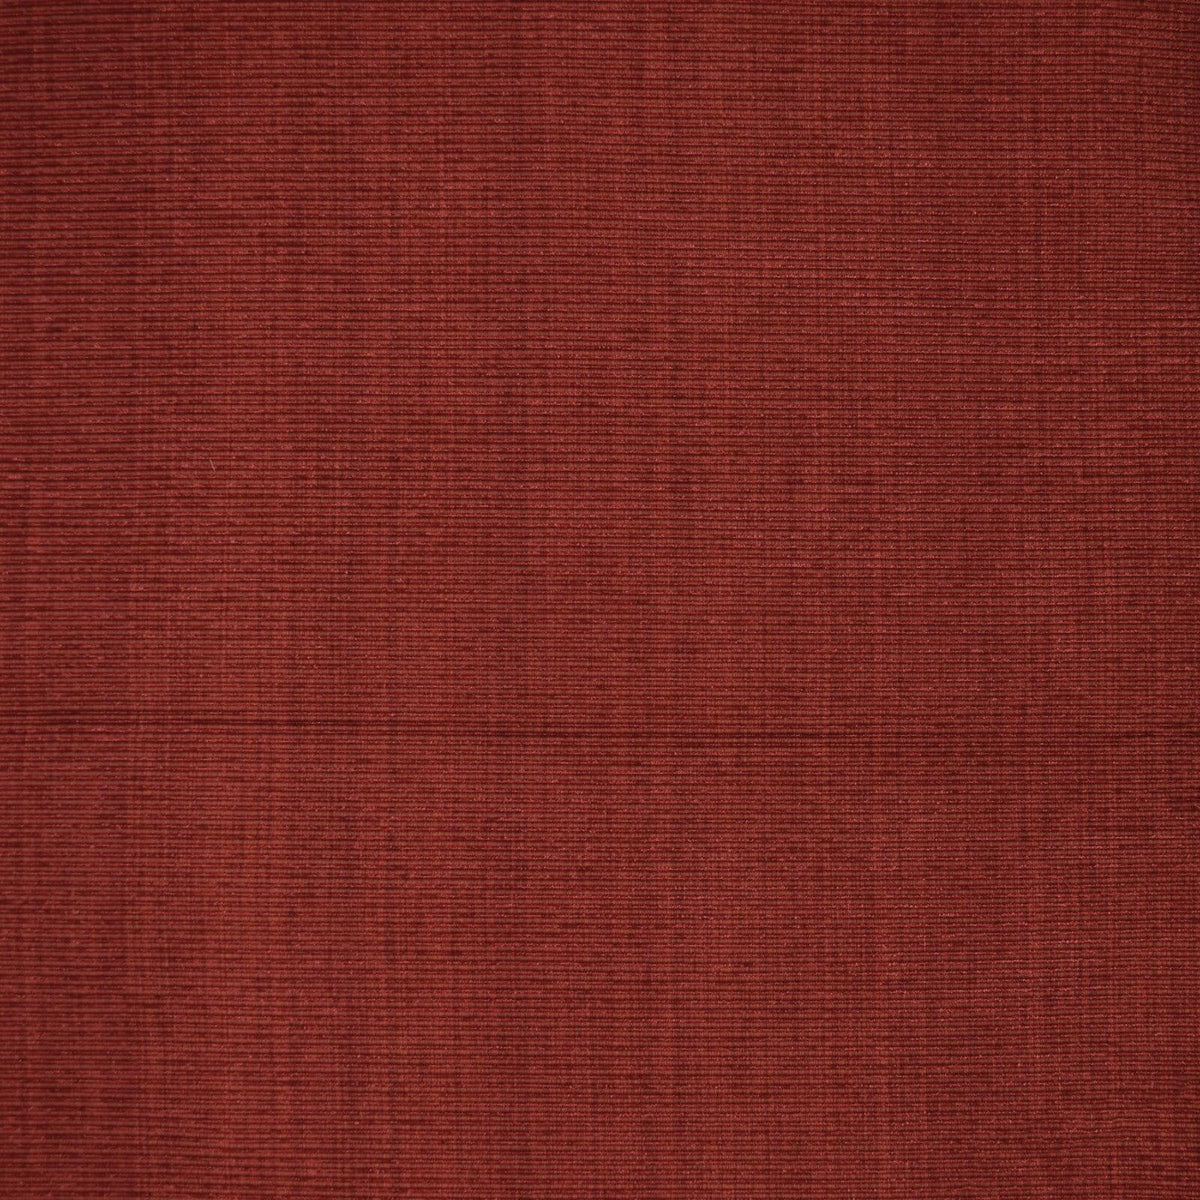 Replenish F3736 Red - Atlanta Fabrics